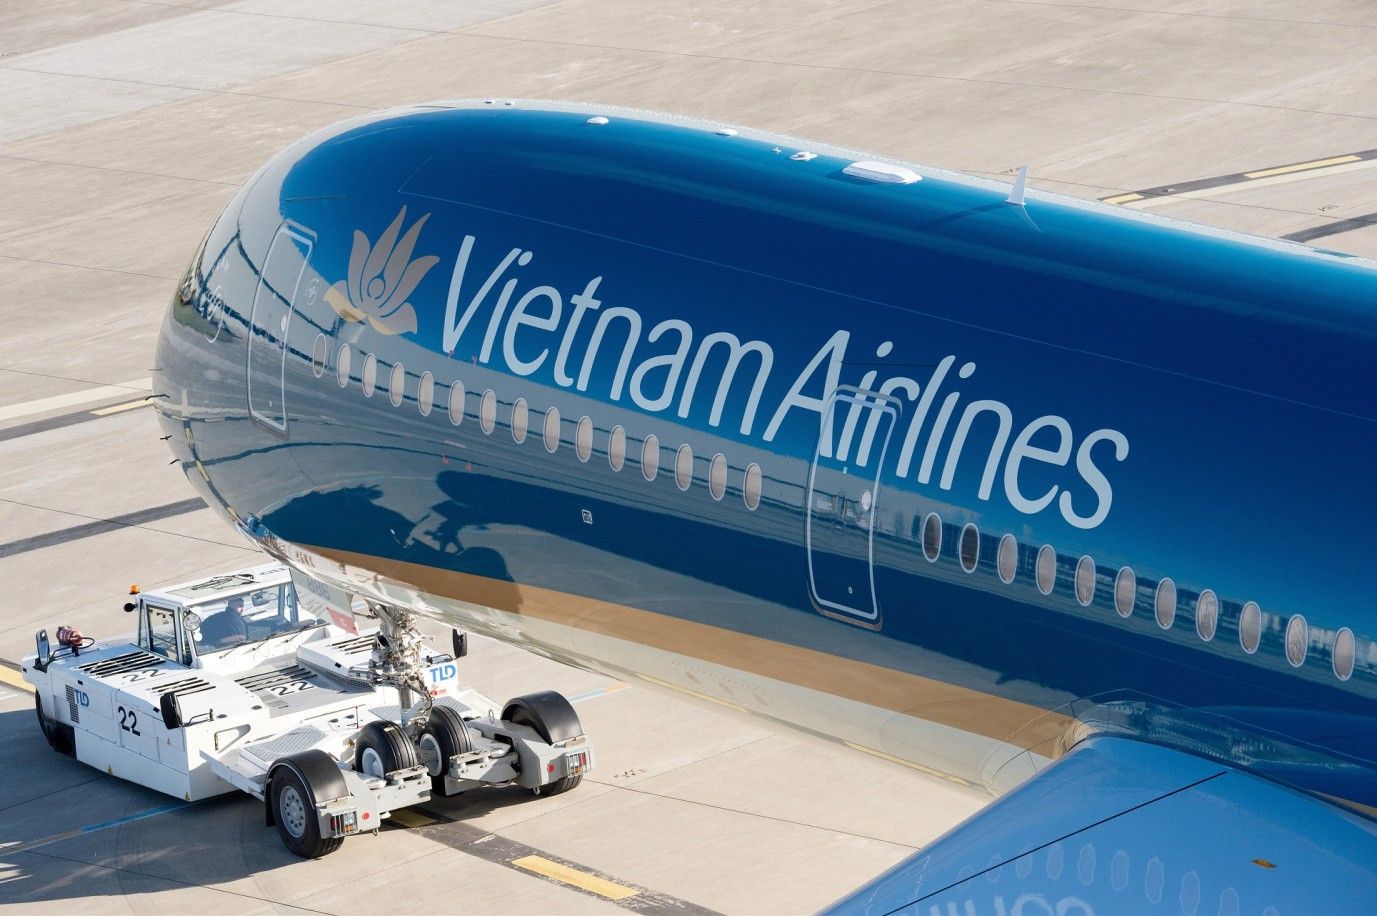 Giá trị thương hiệu Vietnam Airlines đạt gần 115 triệu USD